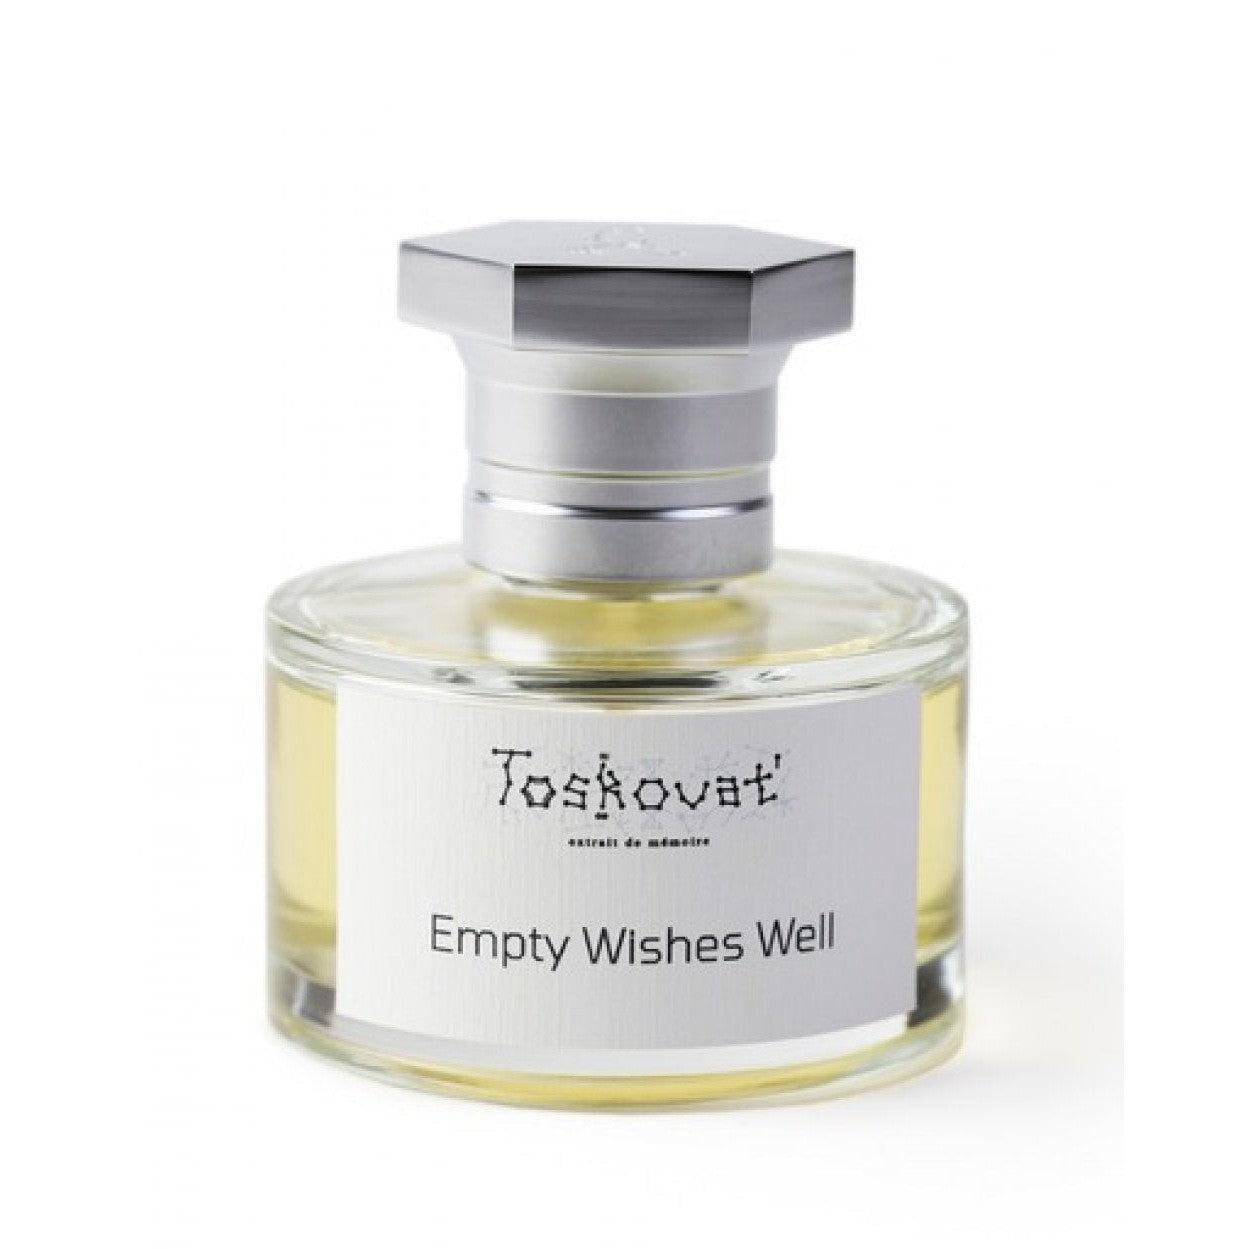 Toskovat` Empty Wishes Well, 60 ml, Extract De Parfum-